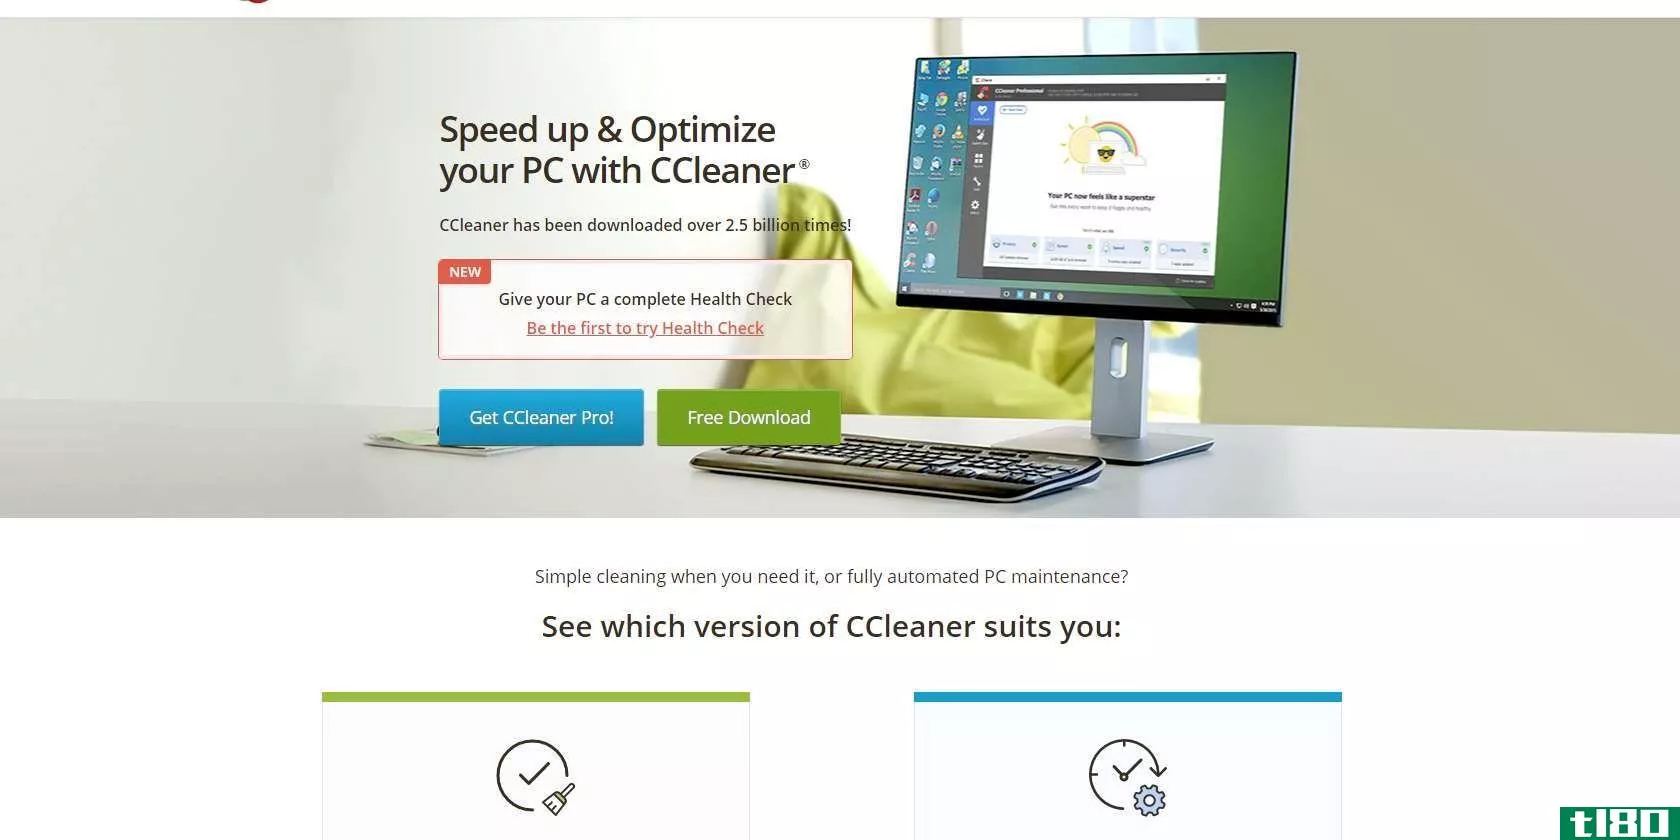 微软将ccleaner标为“可能不需要的应用程序”